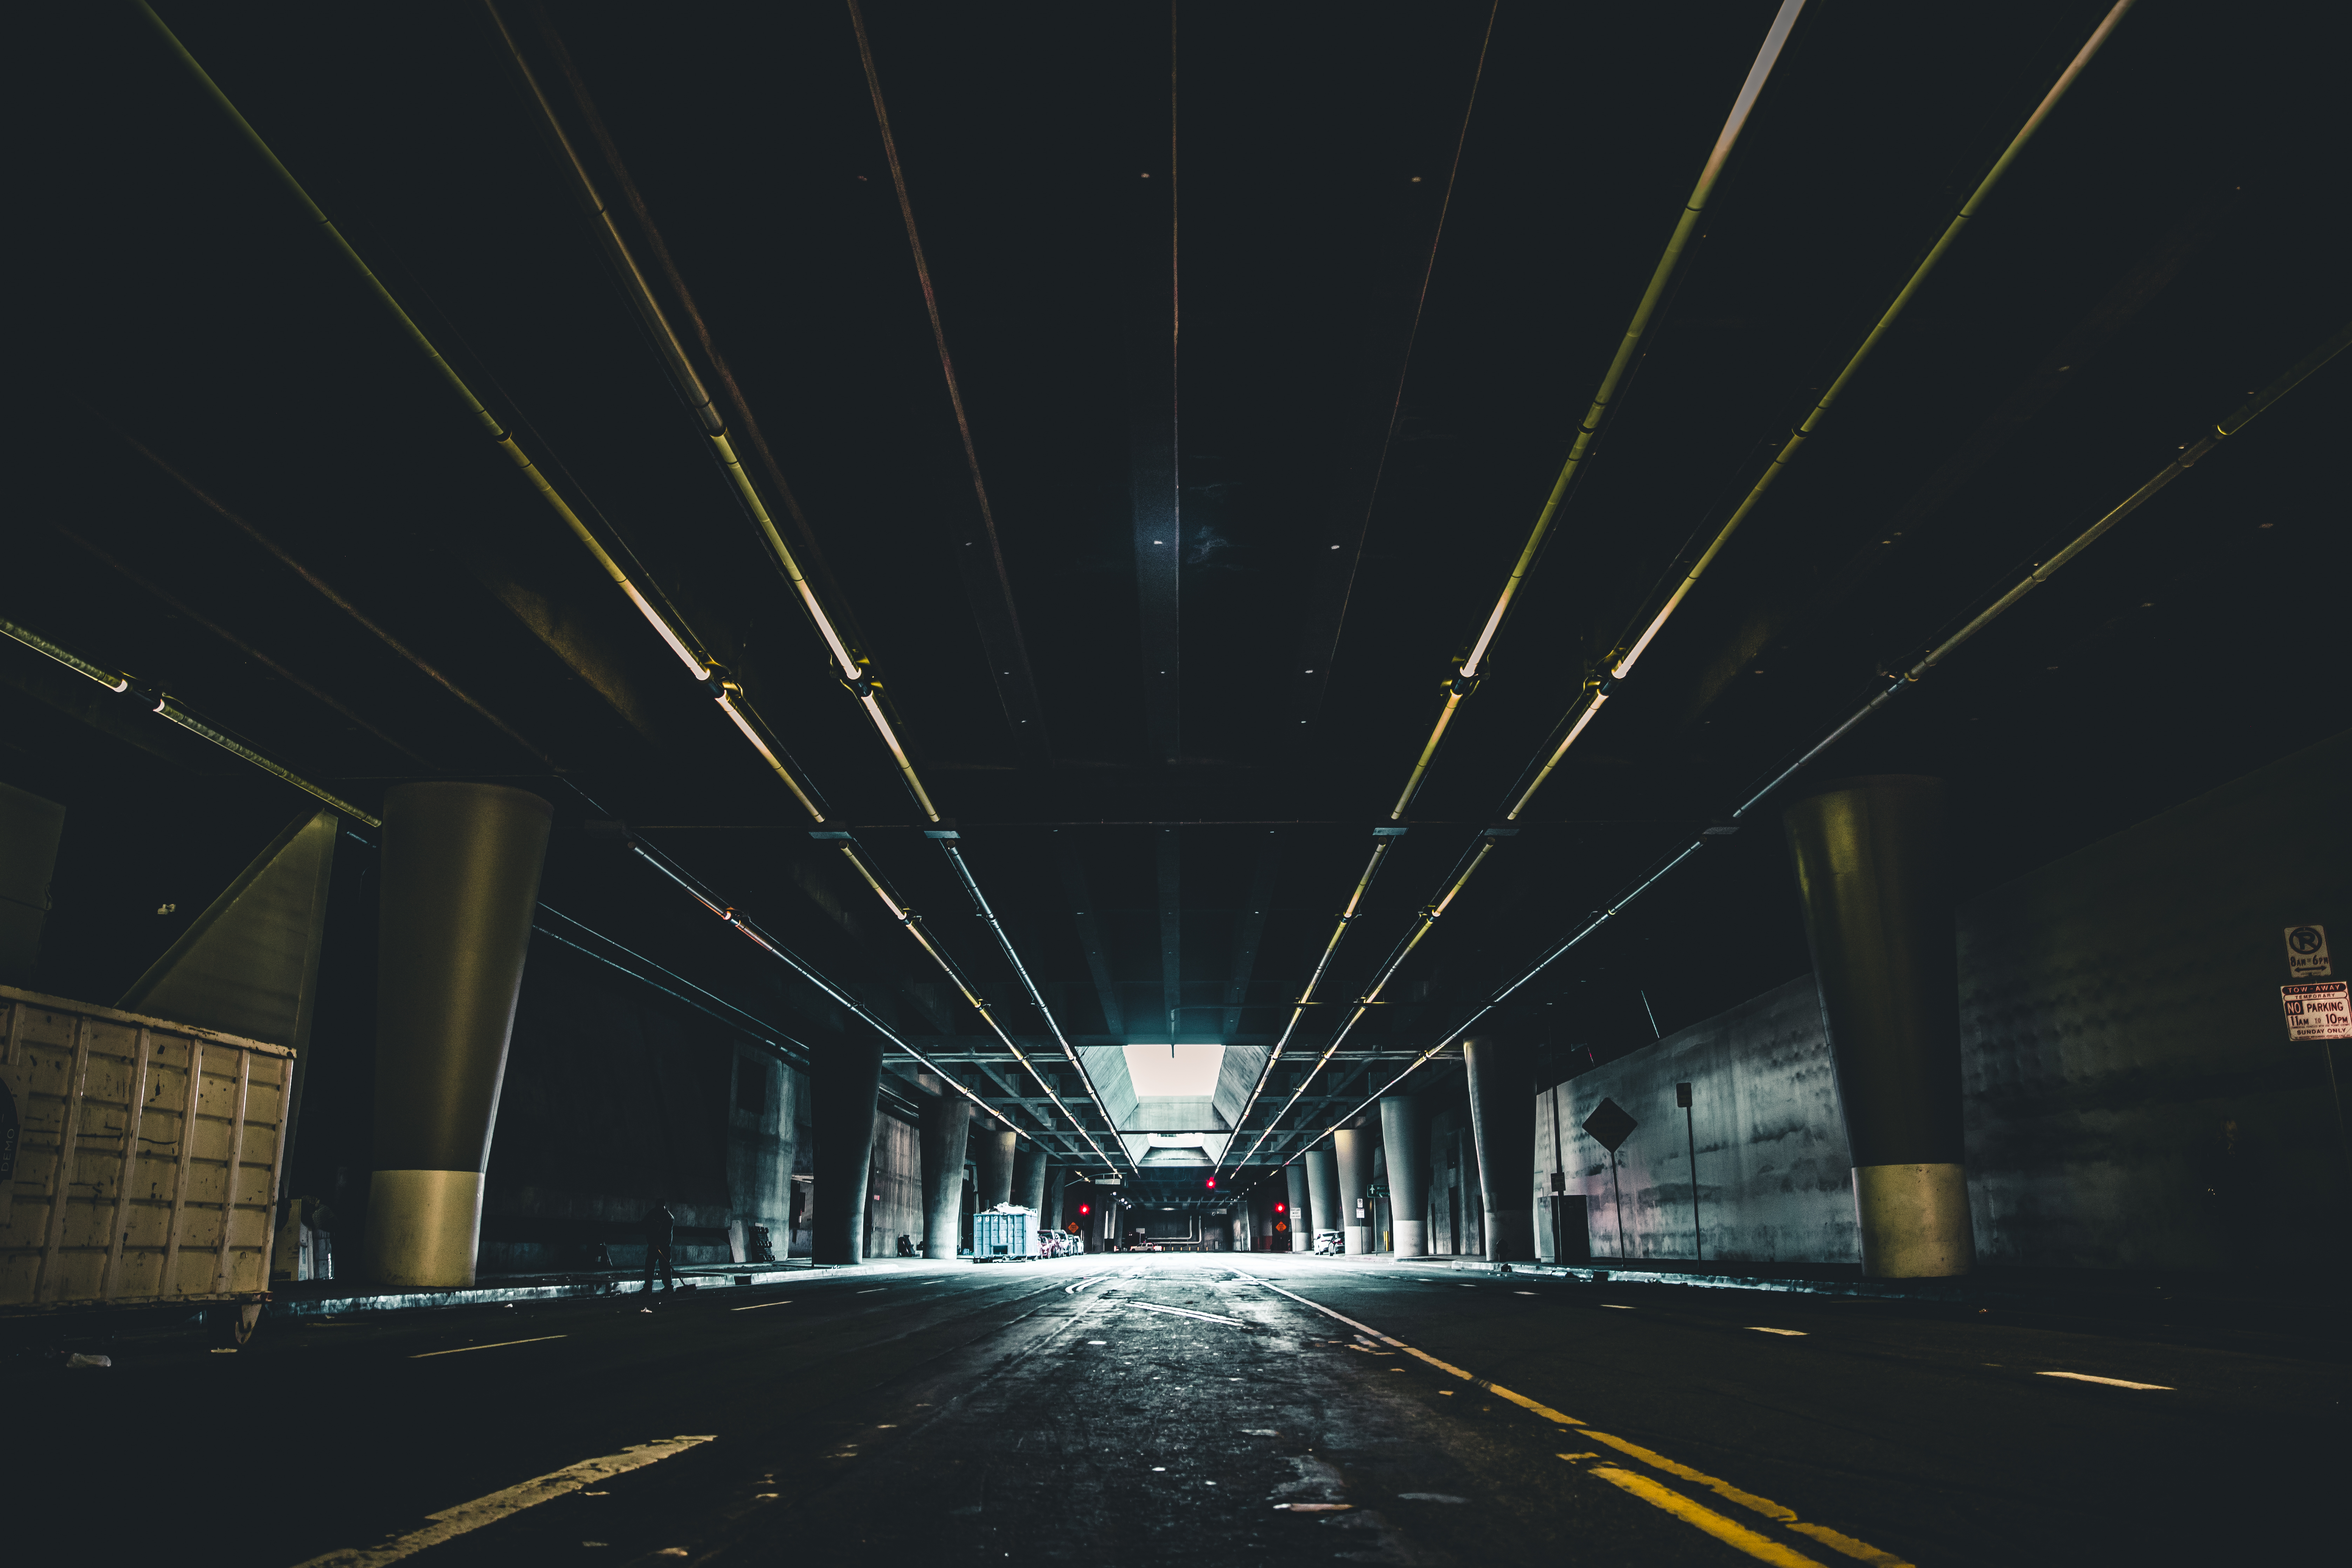 dark, underground, building, parking